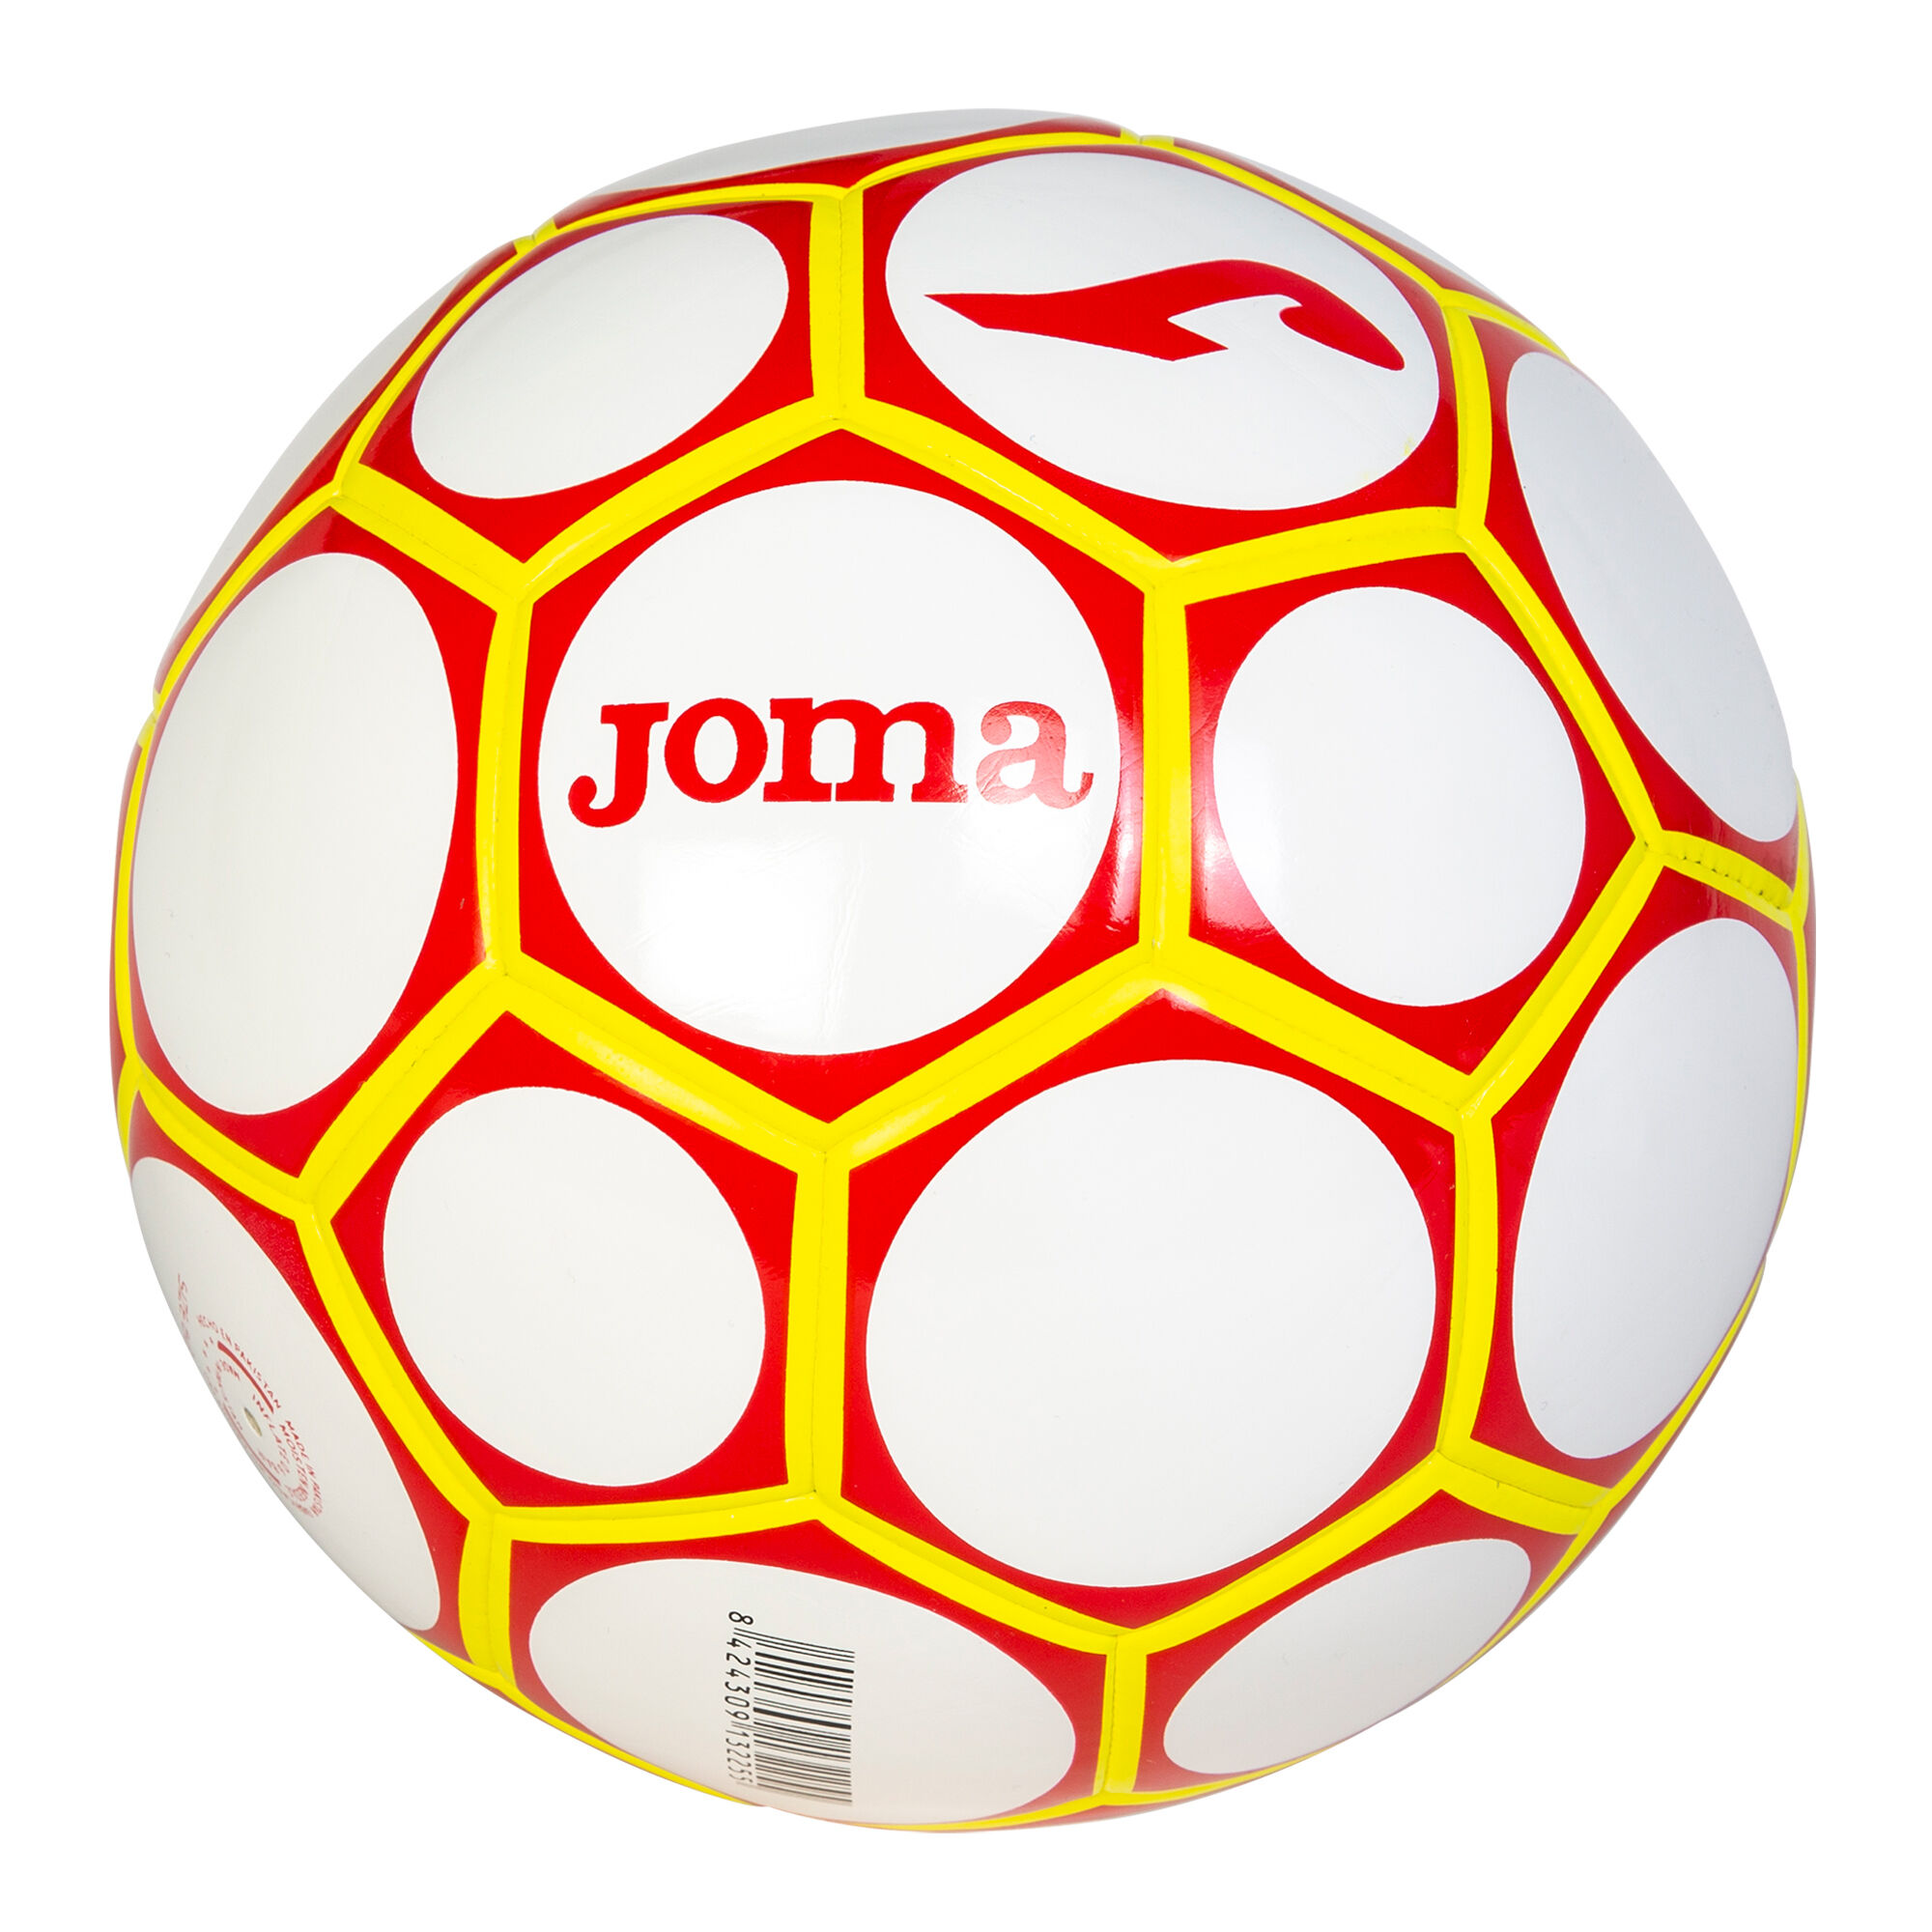 Tallas y medidas de los balones oficiales de futbol y futbol sala en España  – TEAM CO EQUIPACIONES DEPORTIVAS S.L.